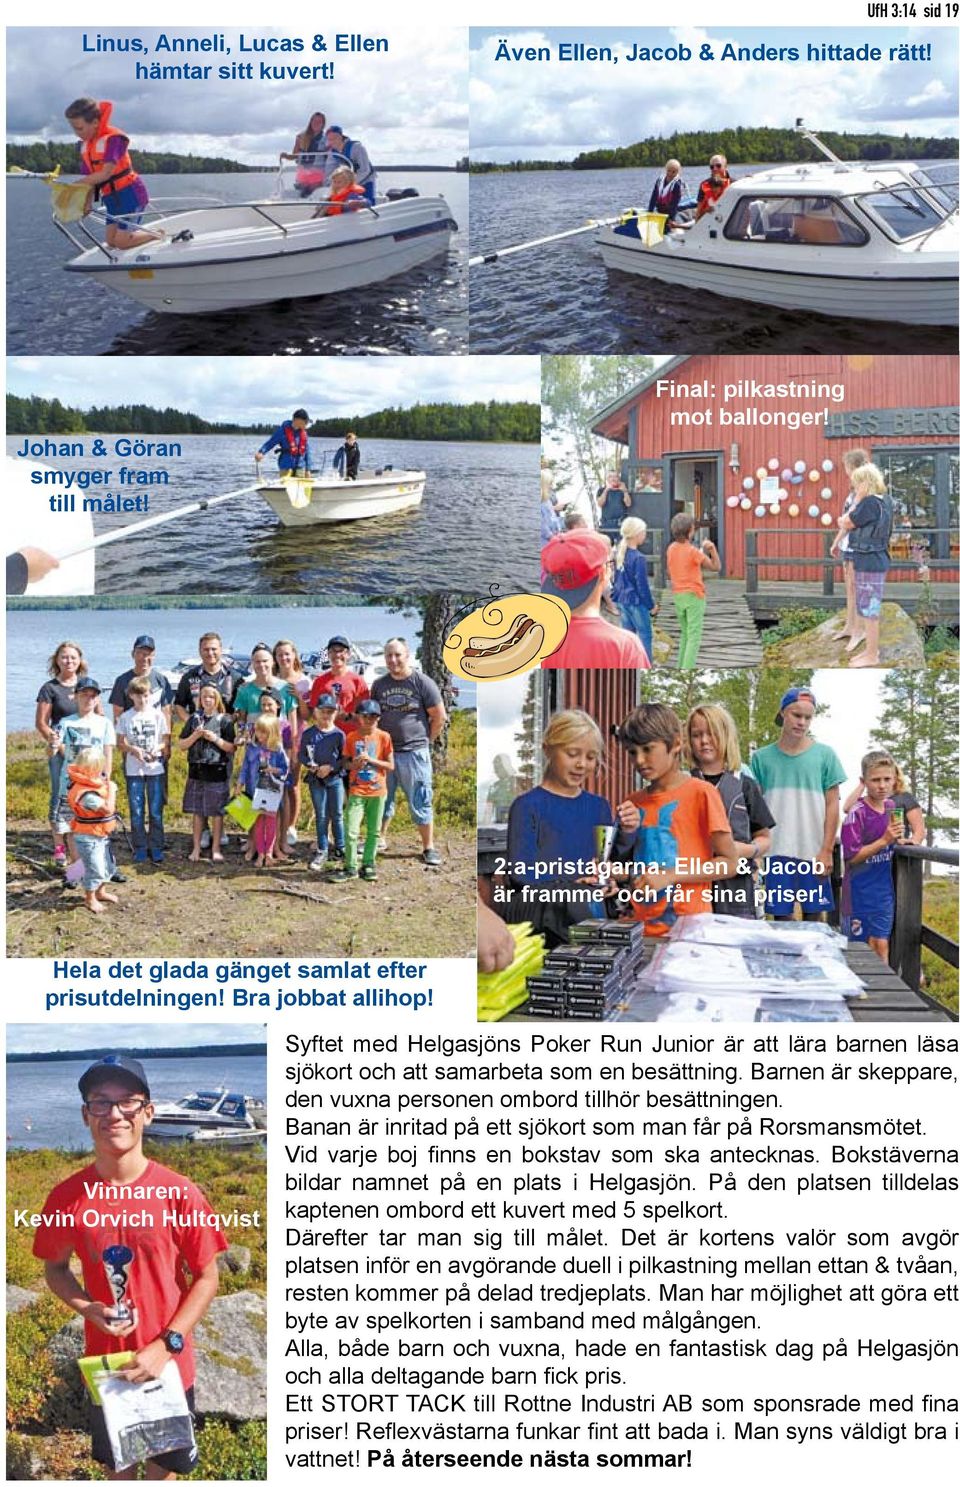 Vinnaren: Kevin Orvich Hultqvist yftet med Helgasjöns Poker Run Junior är att lära barnen läsa sjökort och att samarbeta som en besättning.